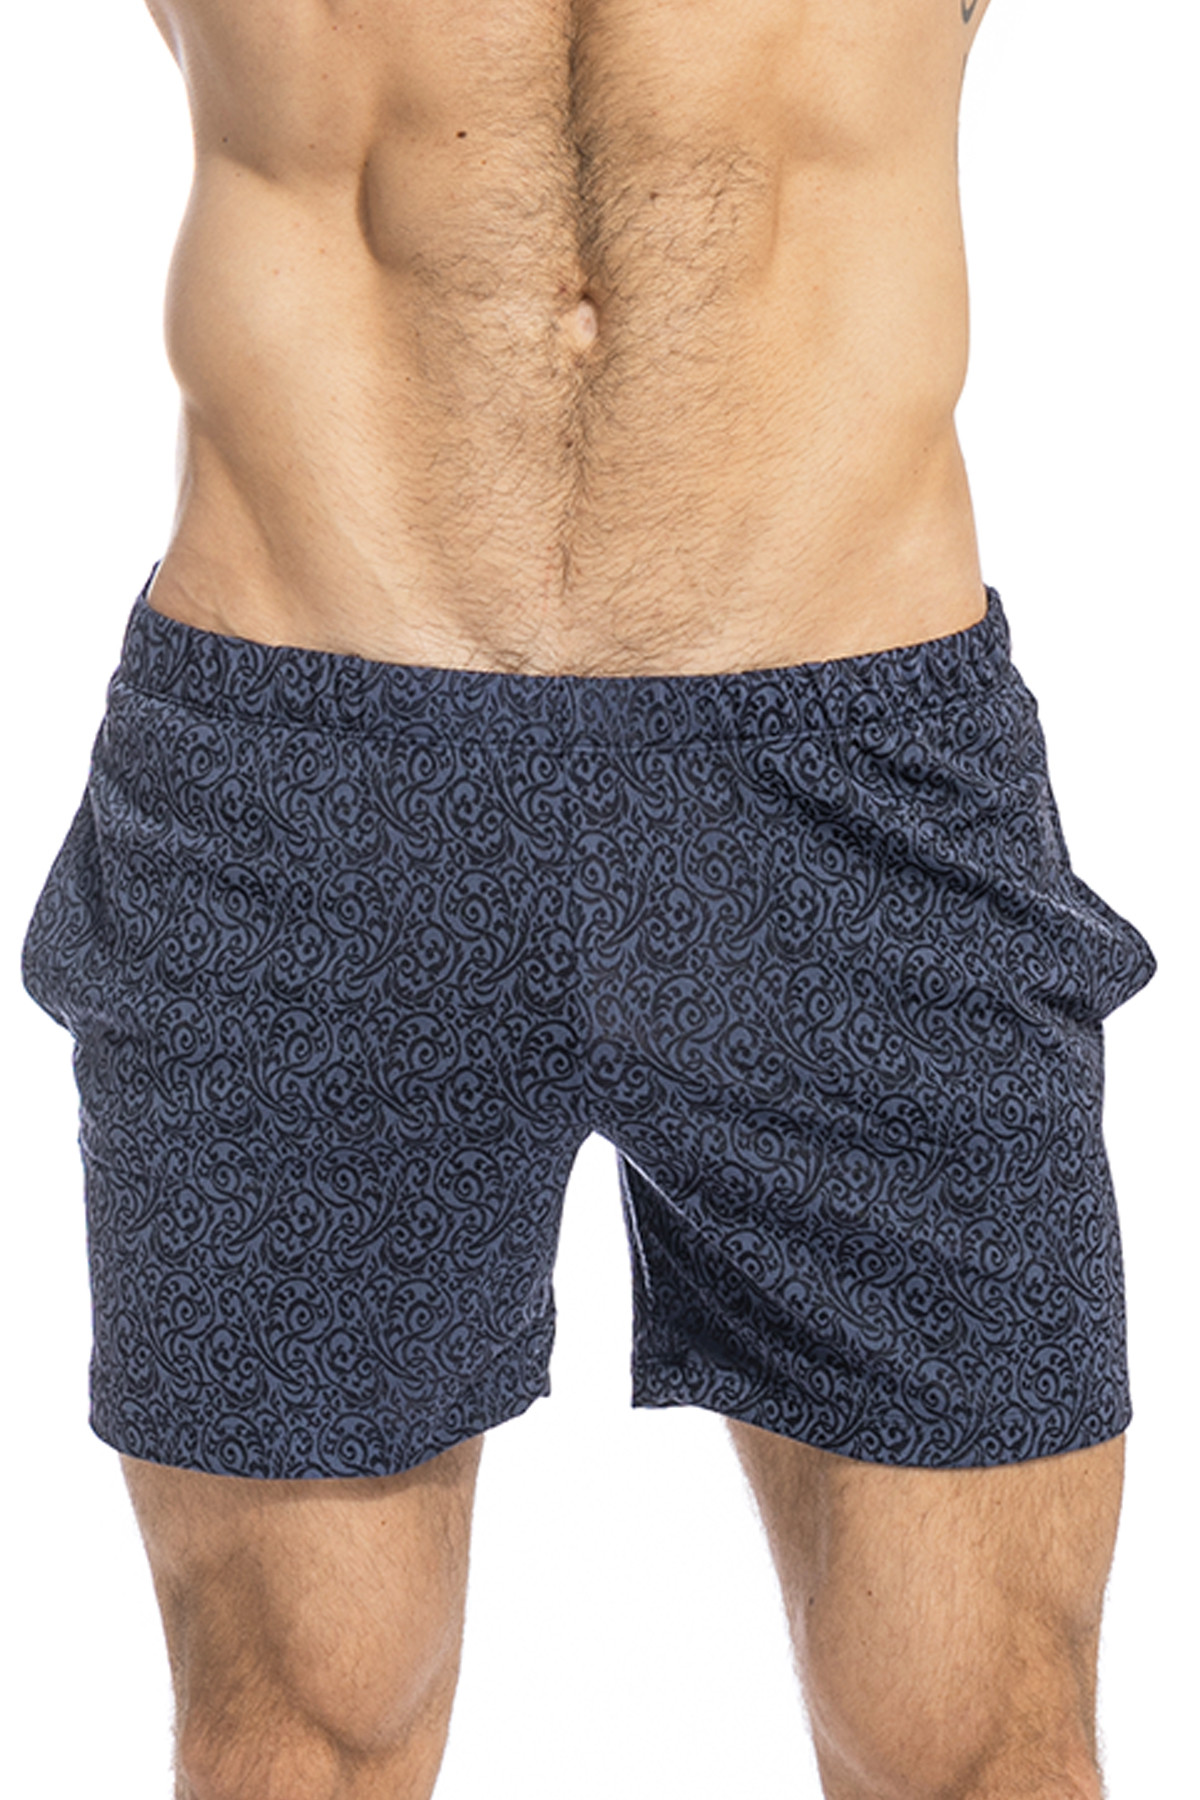 soft shorts for men